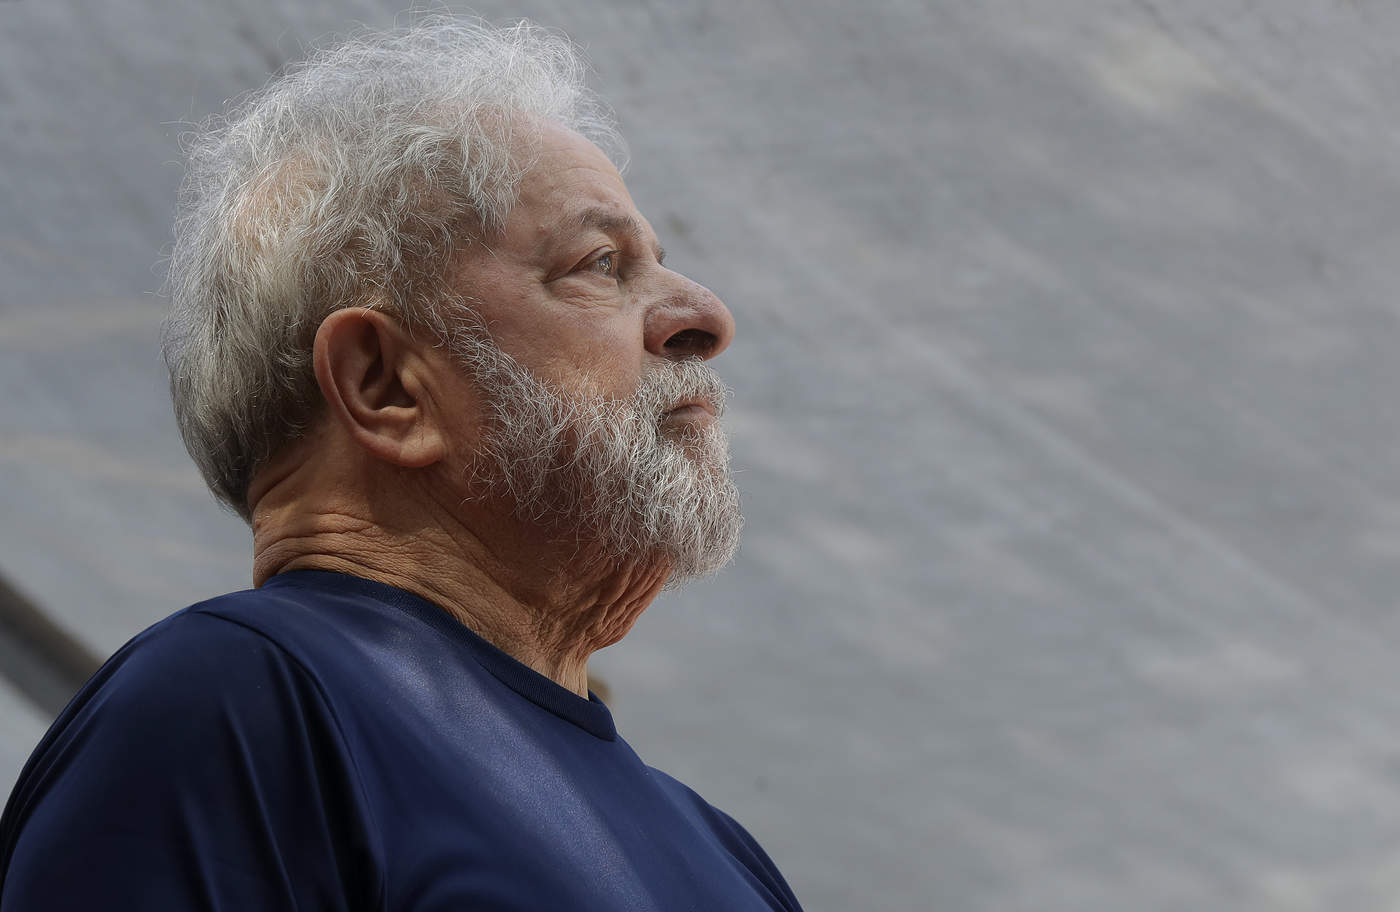 El abogado de Lula, Cristiano Zanin Martins, expresó que la decisión 'atenta contra los más básicos parámetros jurídicos' y 'refuerza el uso perverso de las leyes y procedimientos jurídicos' para 'fines de persecución política'. (ARCHIVO)